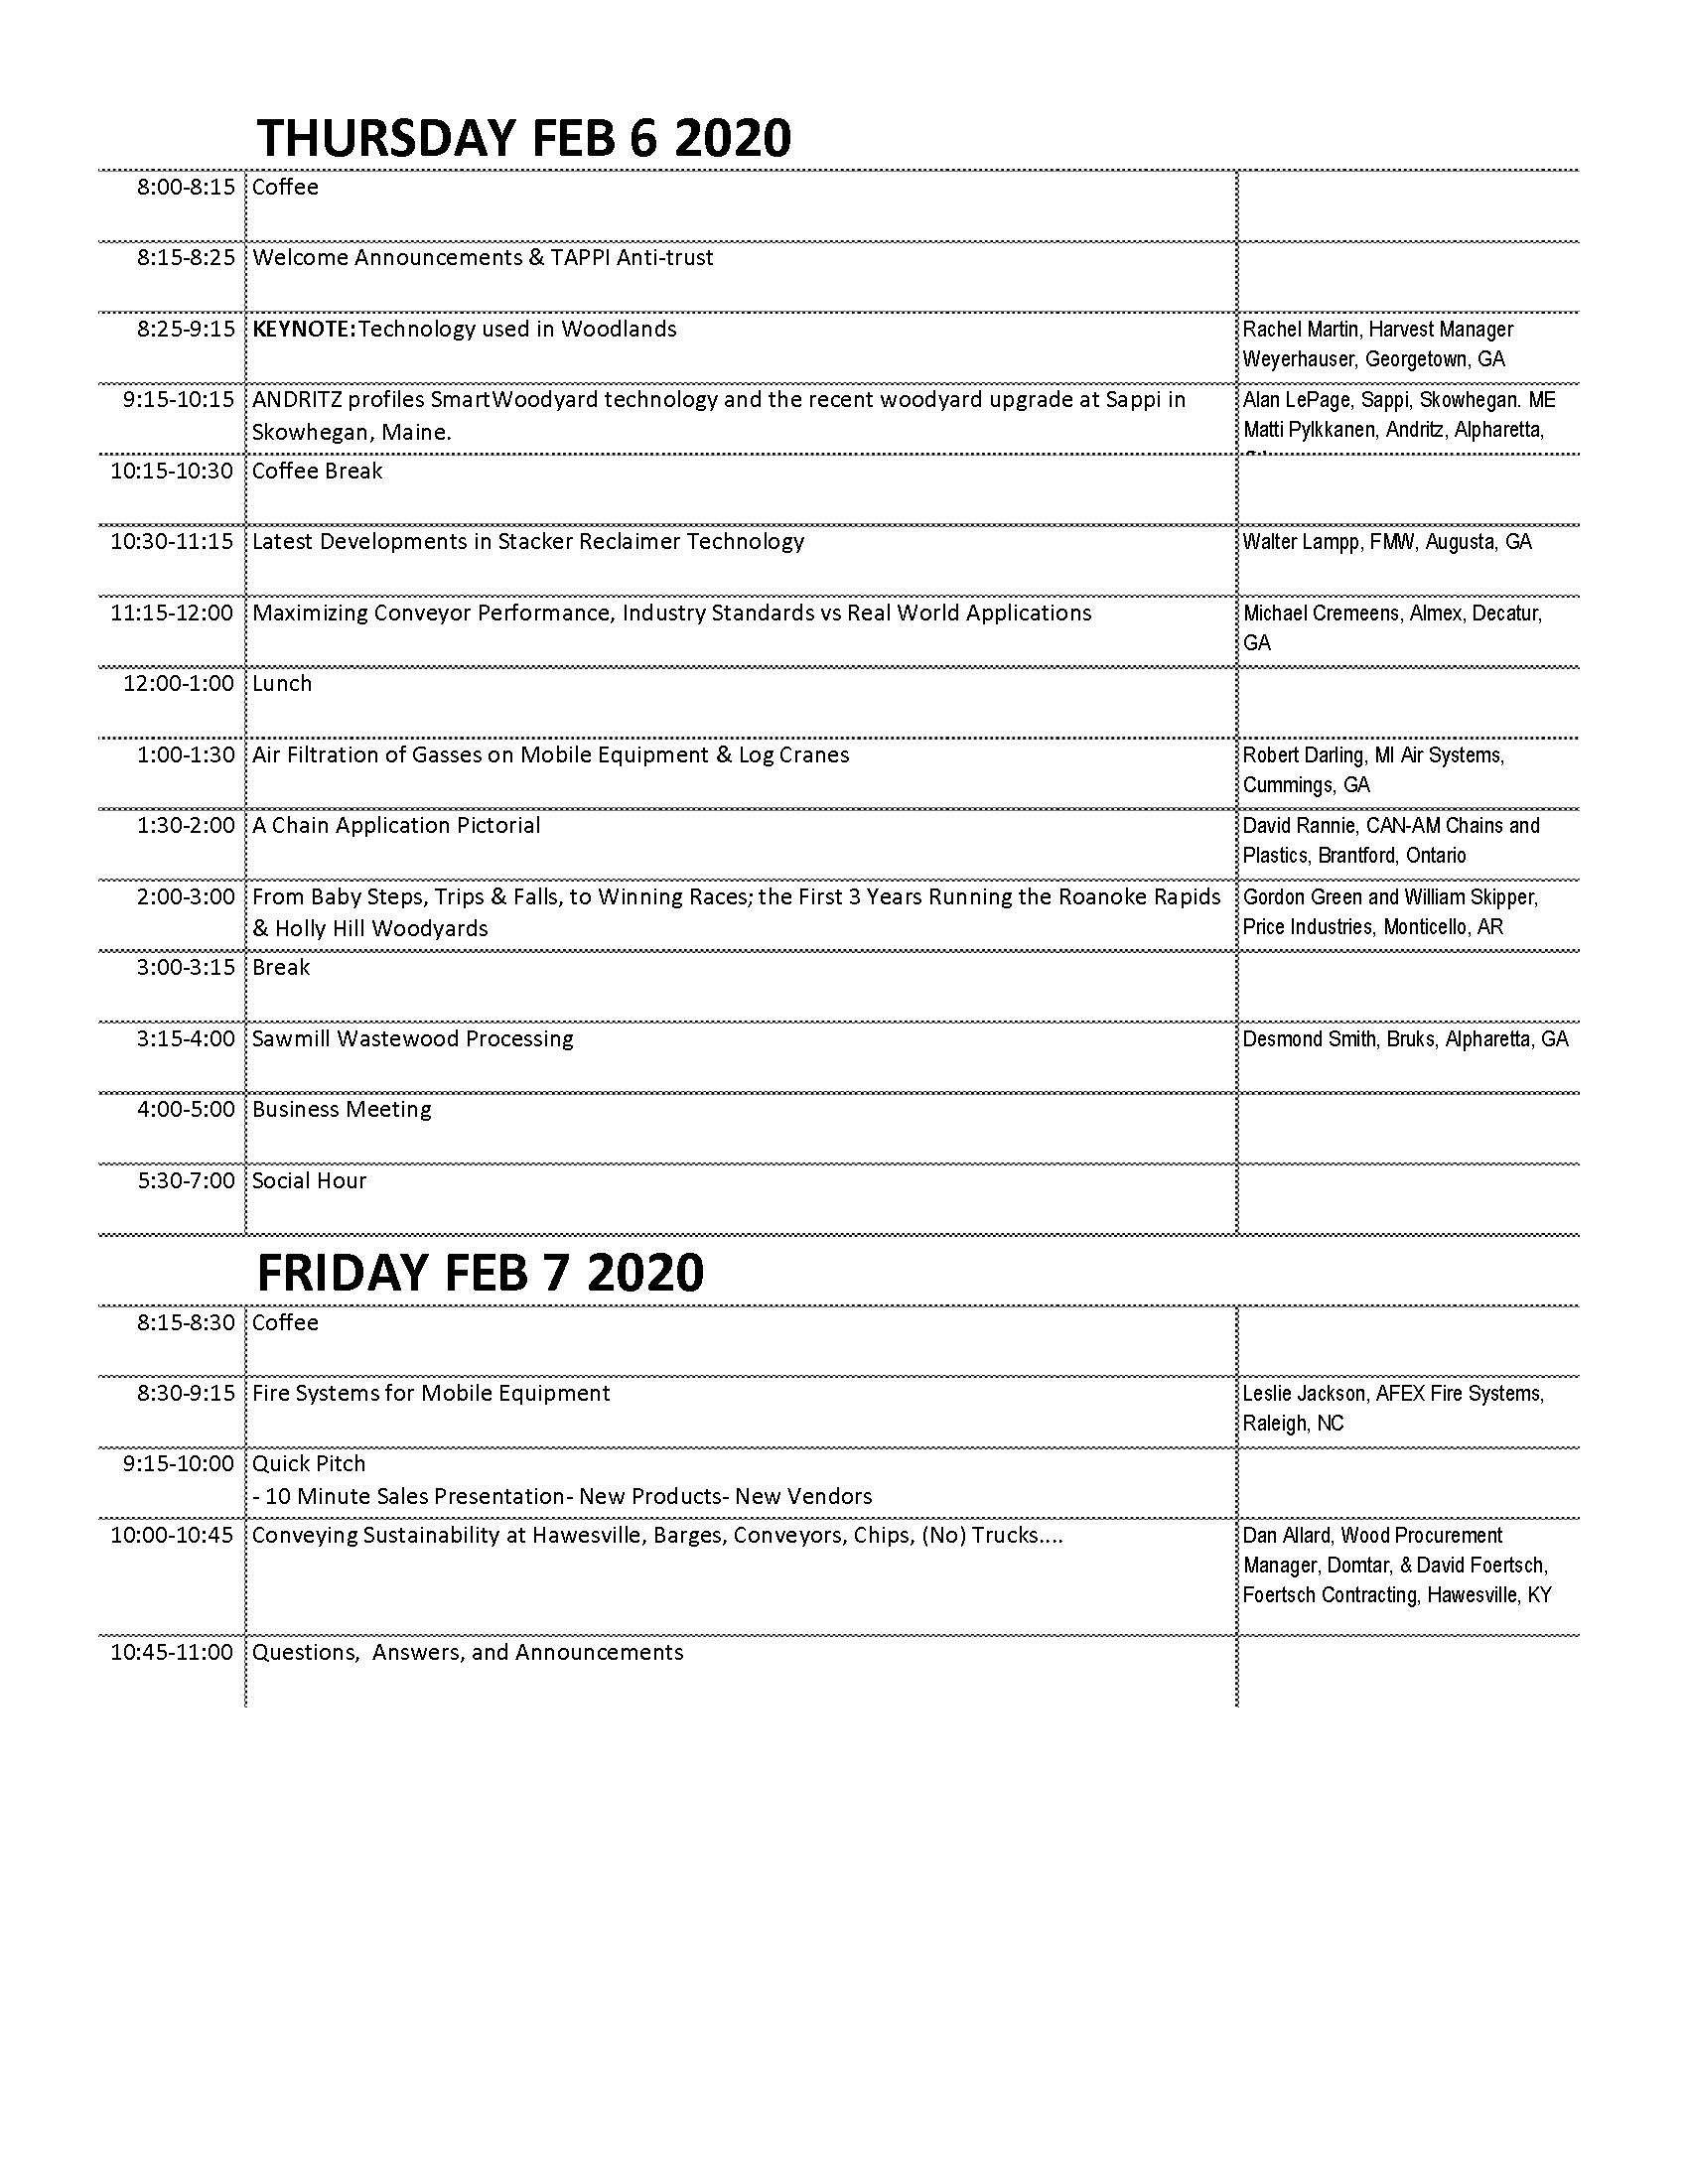 Copy of MOTAG 2020 Agenda